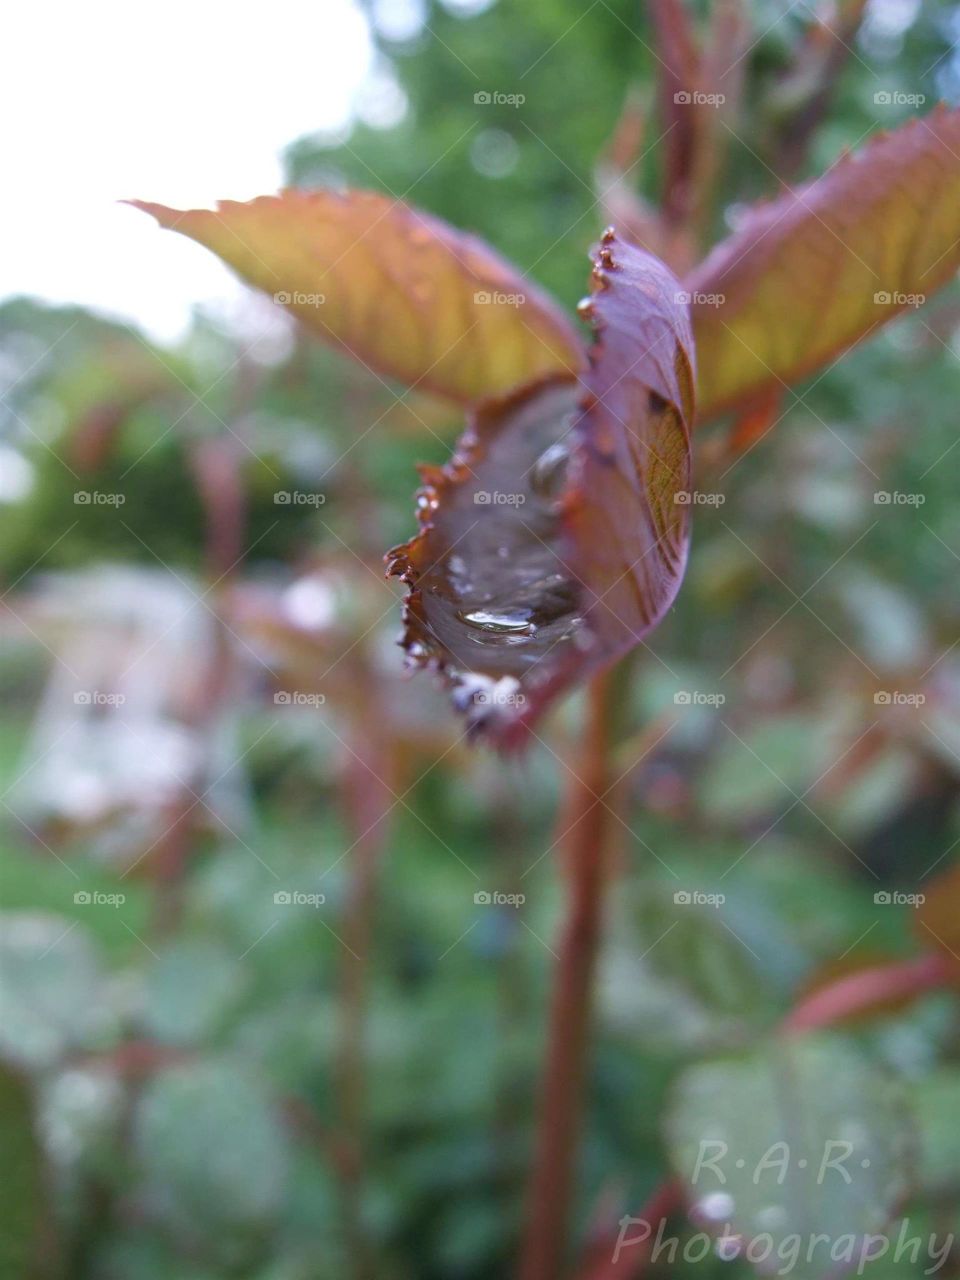 Raindrop on leaf